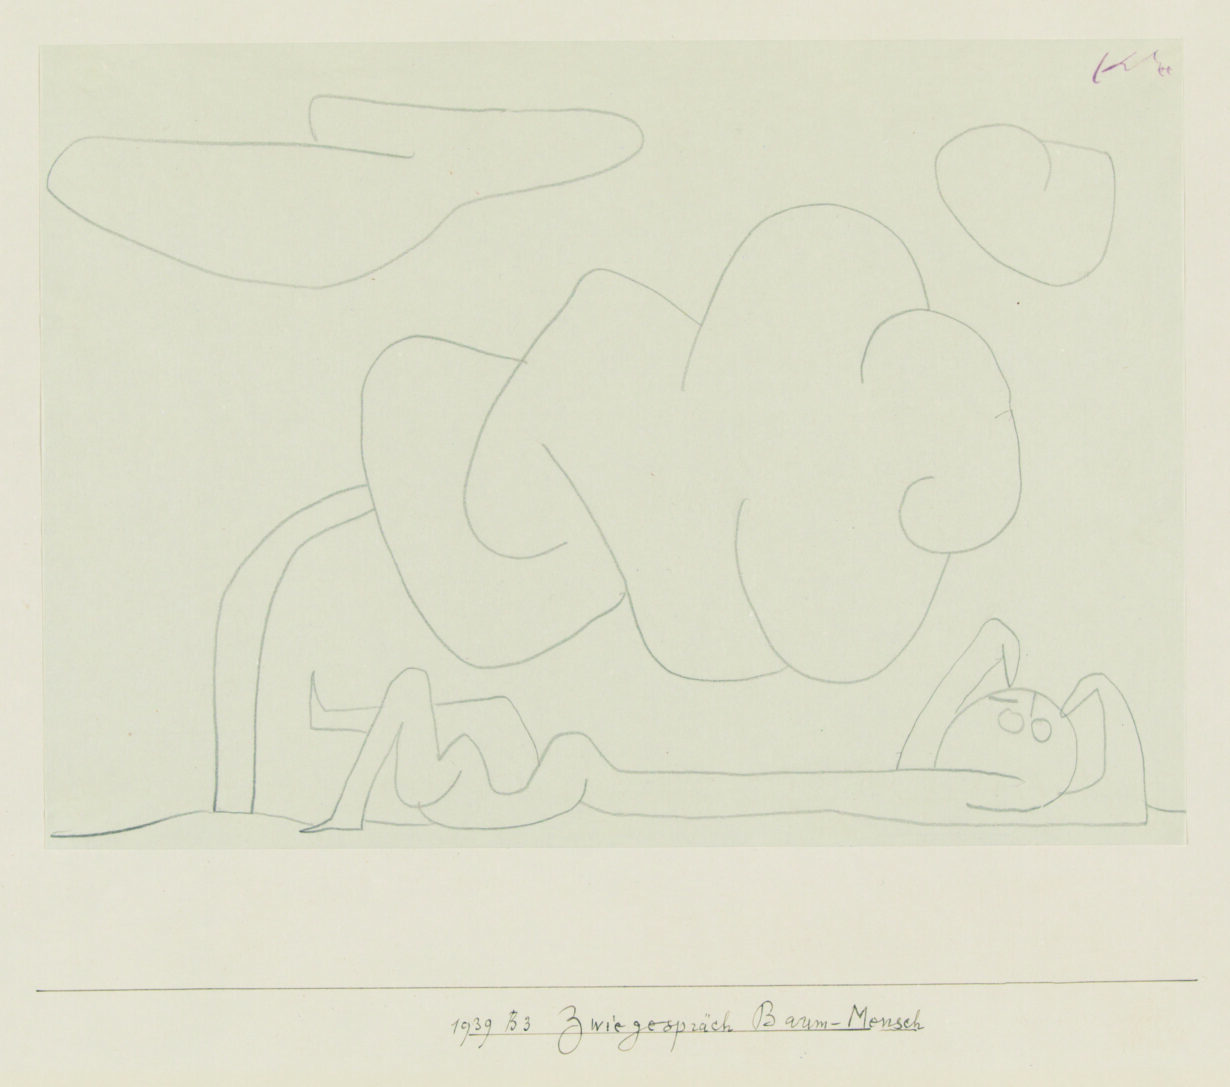 Zentrum Paul Klee: Zwiegespräch Baum-Mensch, 1939; Bleistift auf Papier auf Karton.